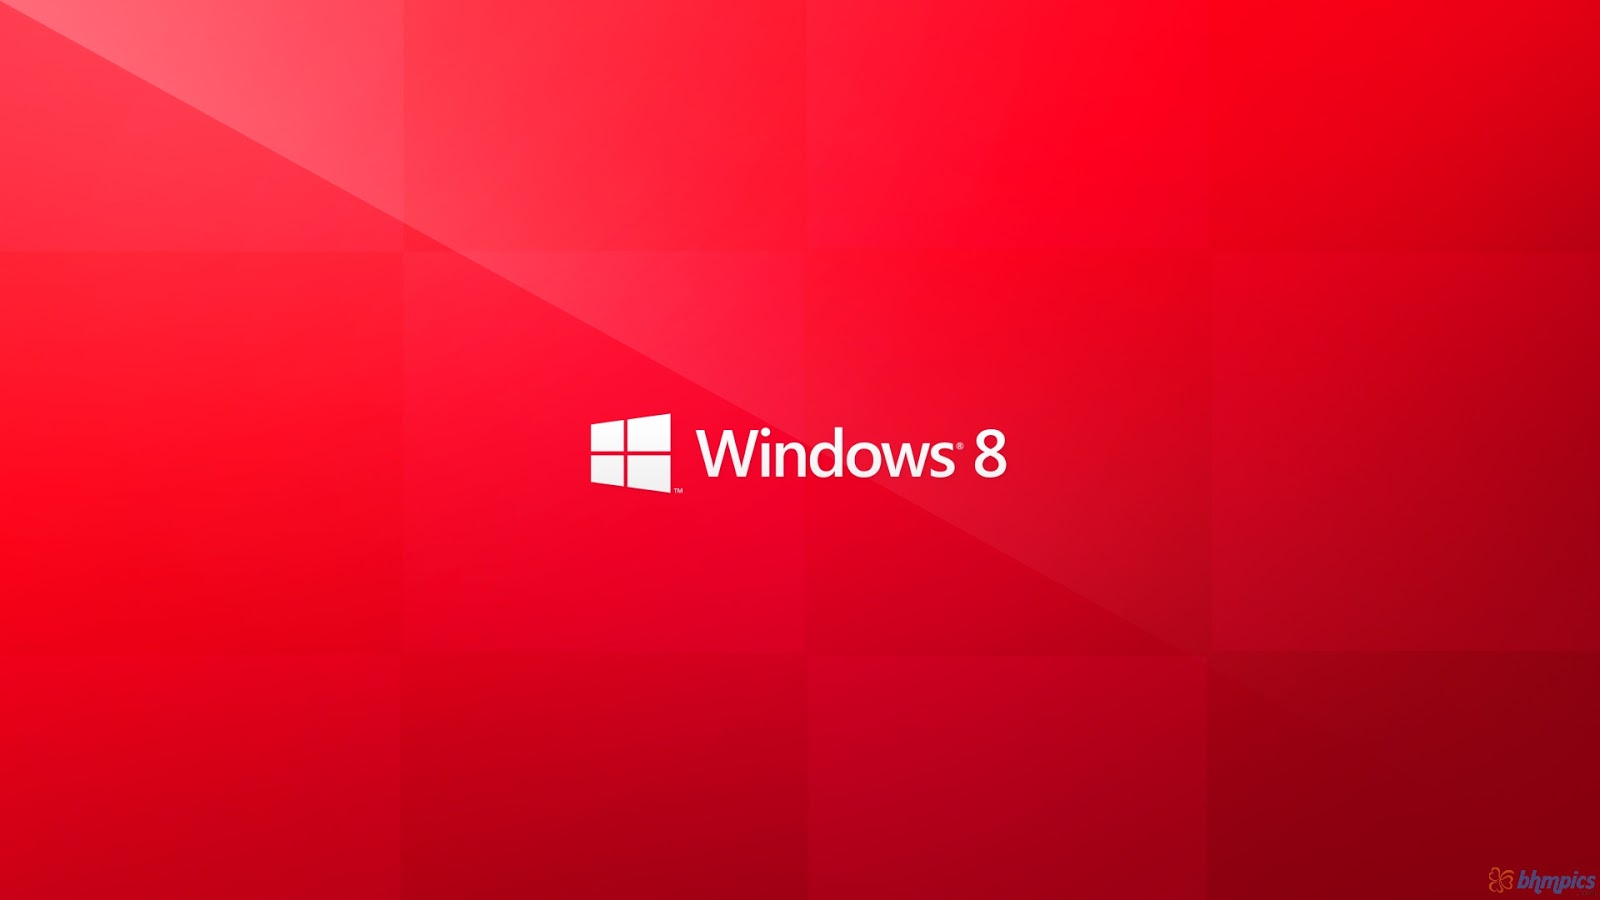 Metro Red Free Wallpaper download for Desktop PC Laptop Windows 8